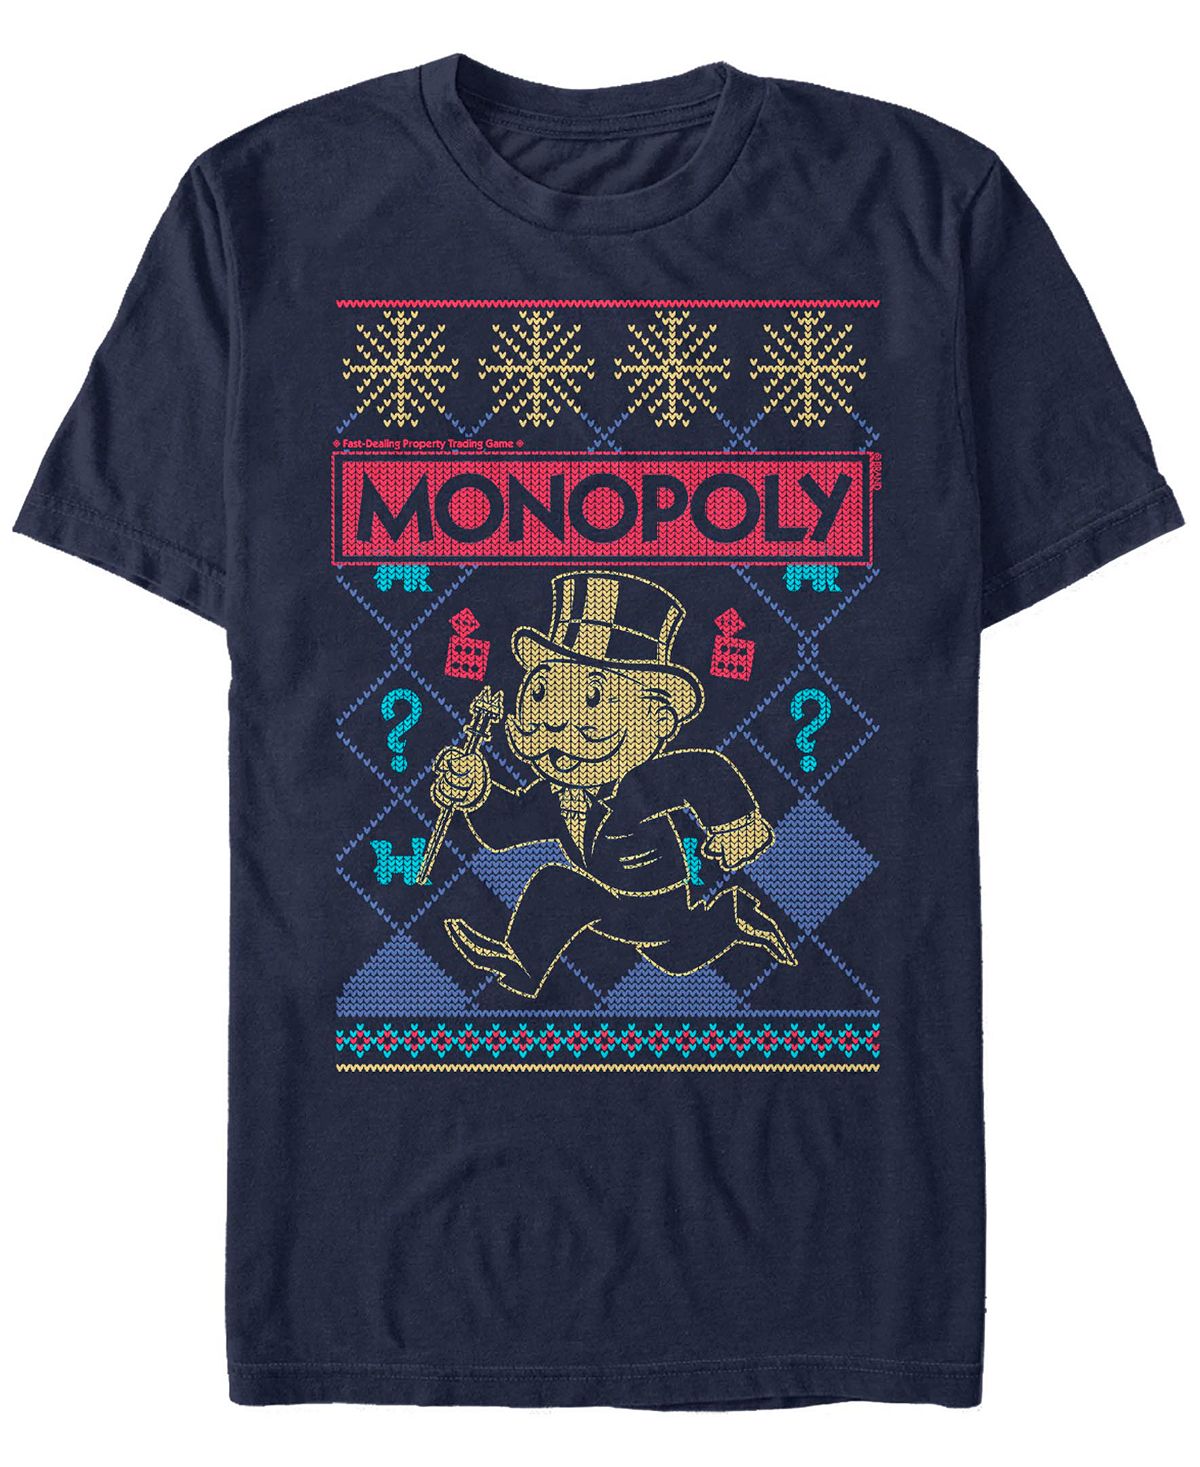 Мужская футболка с коротким рукавом в рождественском стиле monopoly Fifth Sun, синий